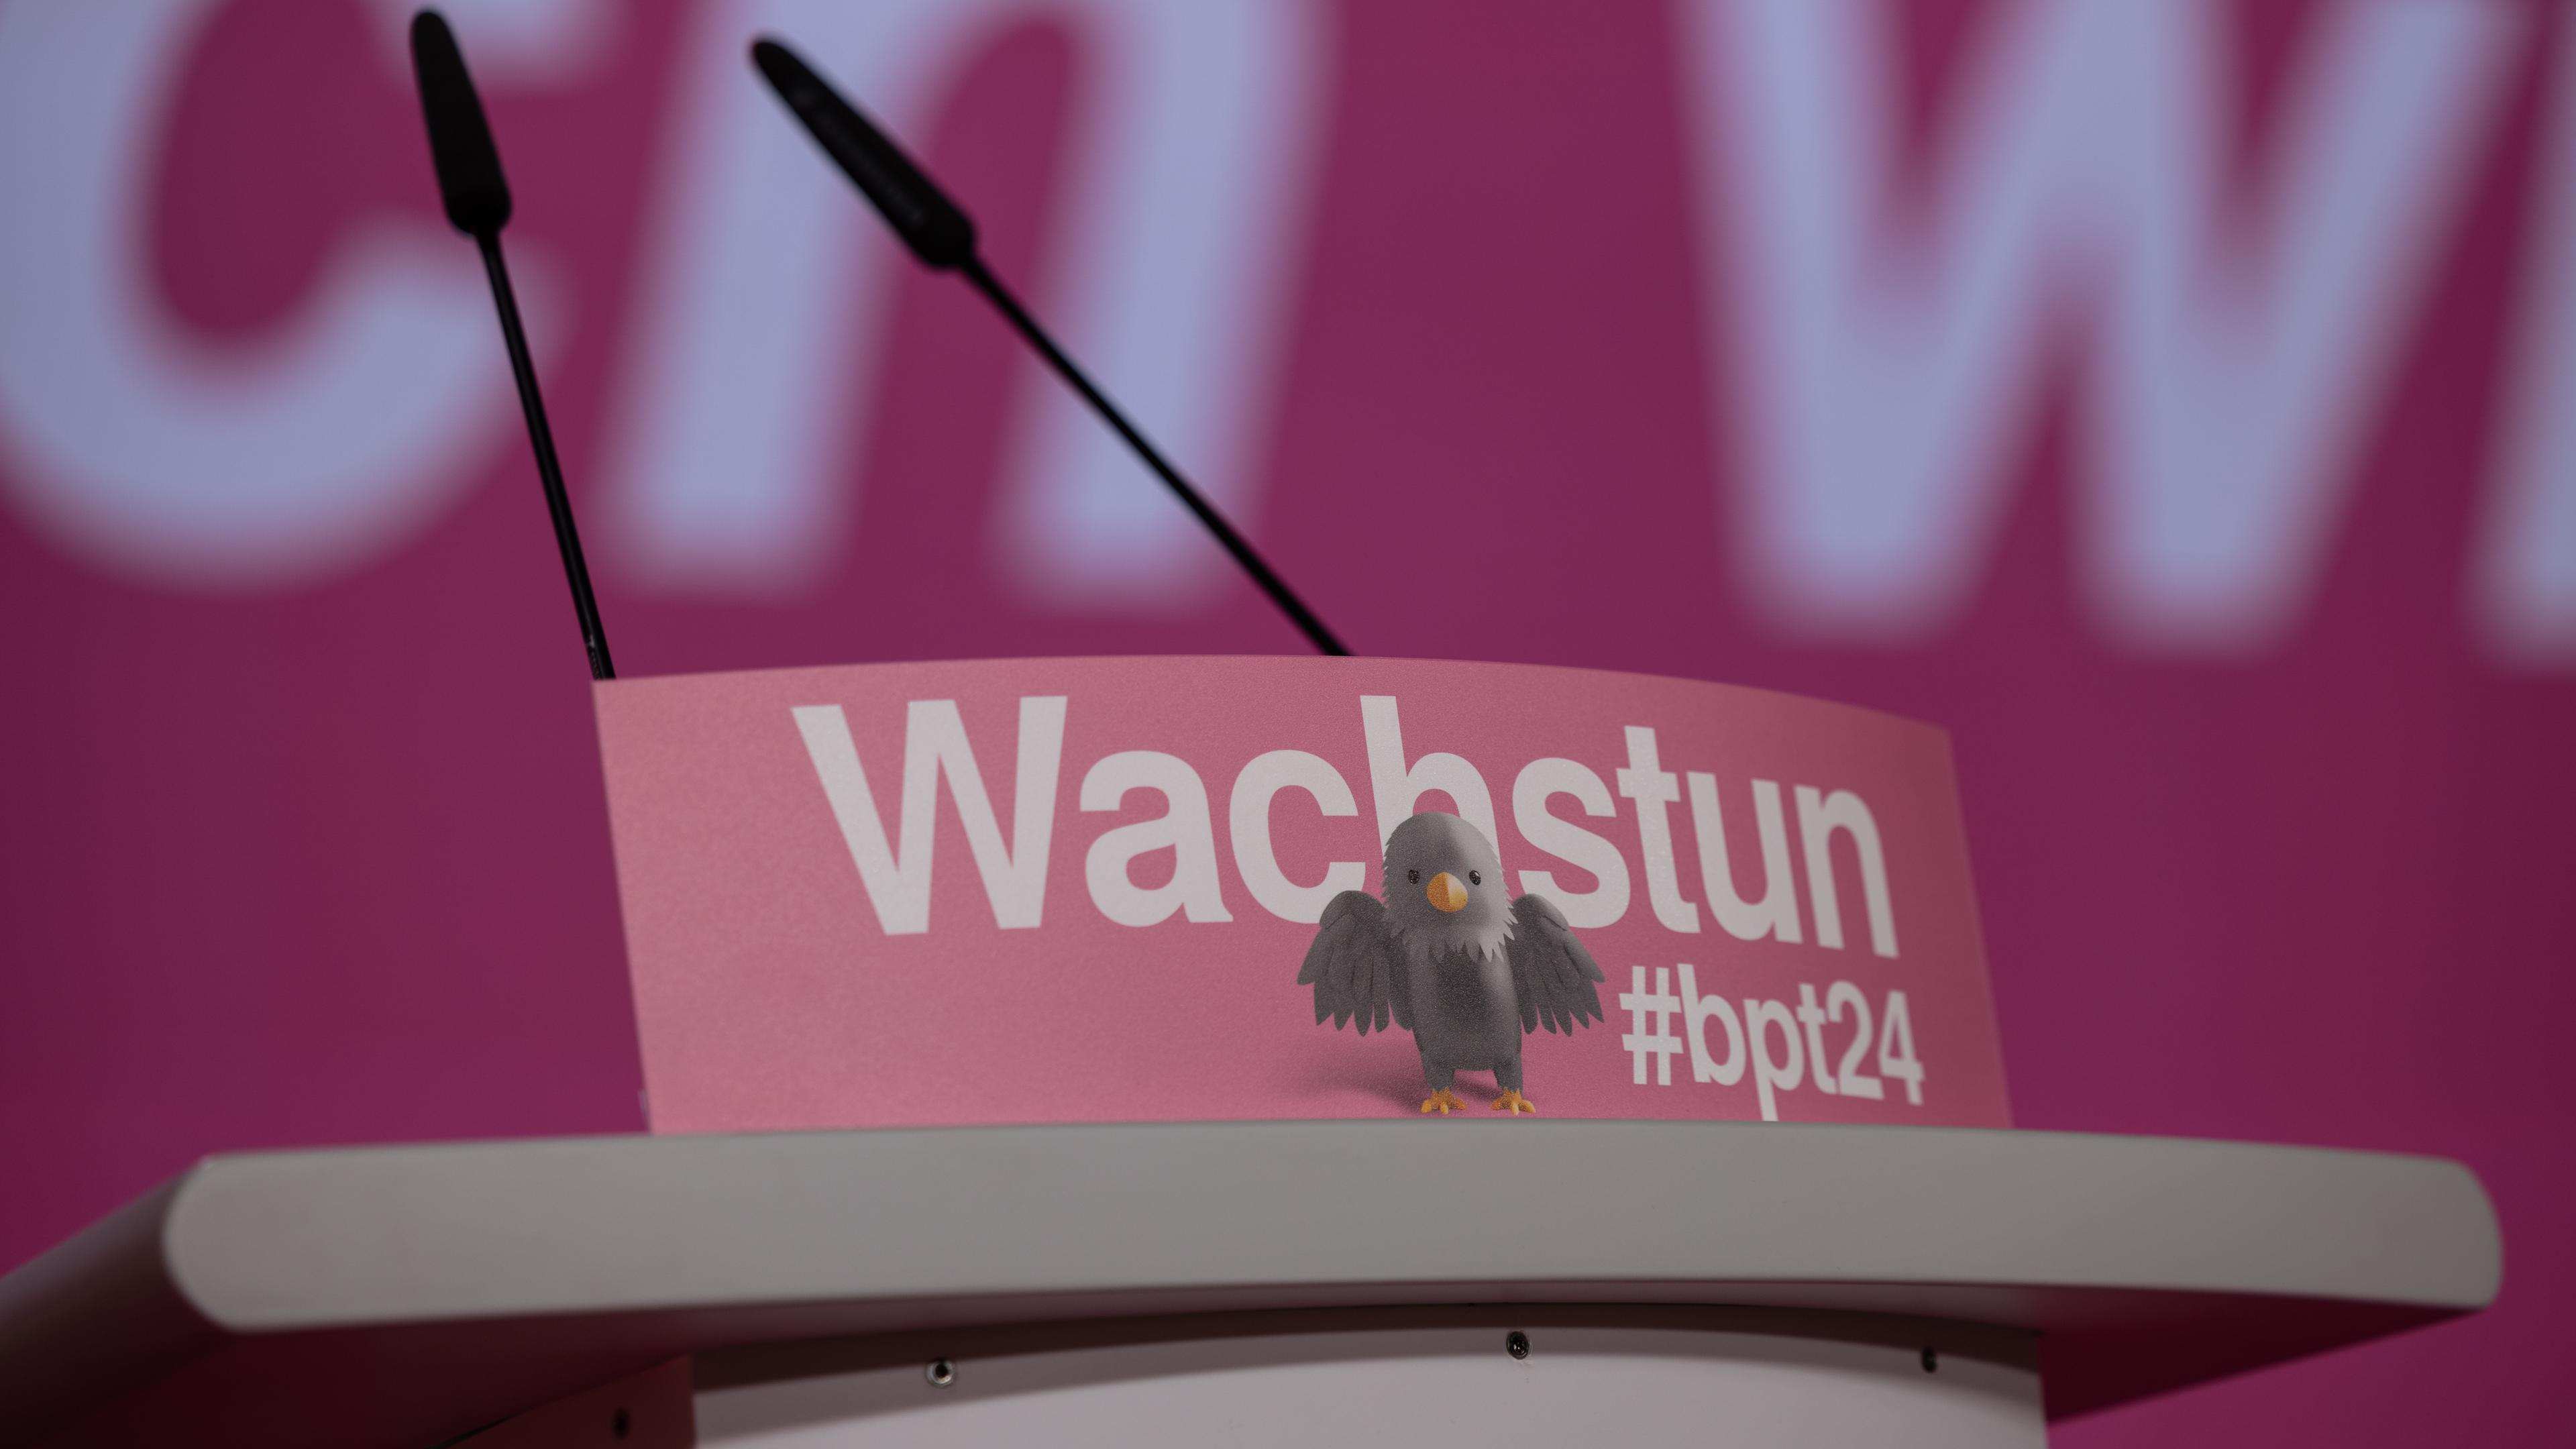 Pult mit Aufschrift "Wachstun" auf FDP-Parteitag in Berlin